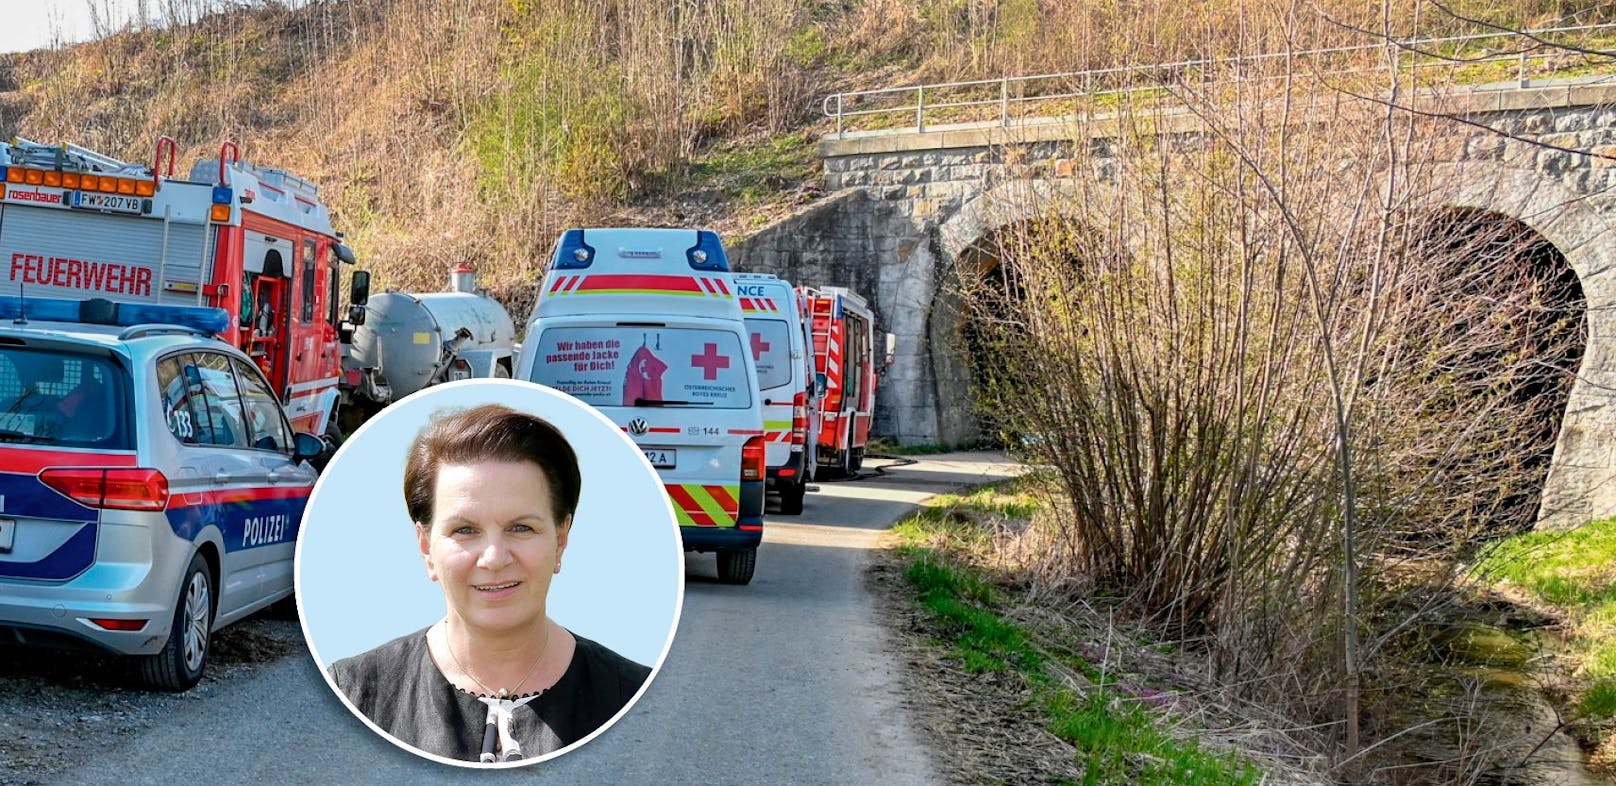 Bürgermeisterin Elisabeth Höllwarth-Kaiser: "Der ganze Ort steht unter Schock und ist in Trauer"